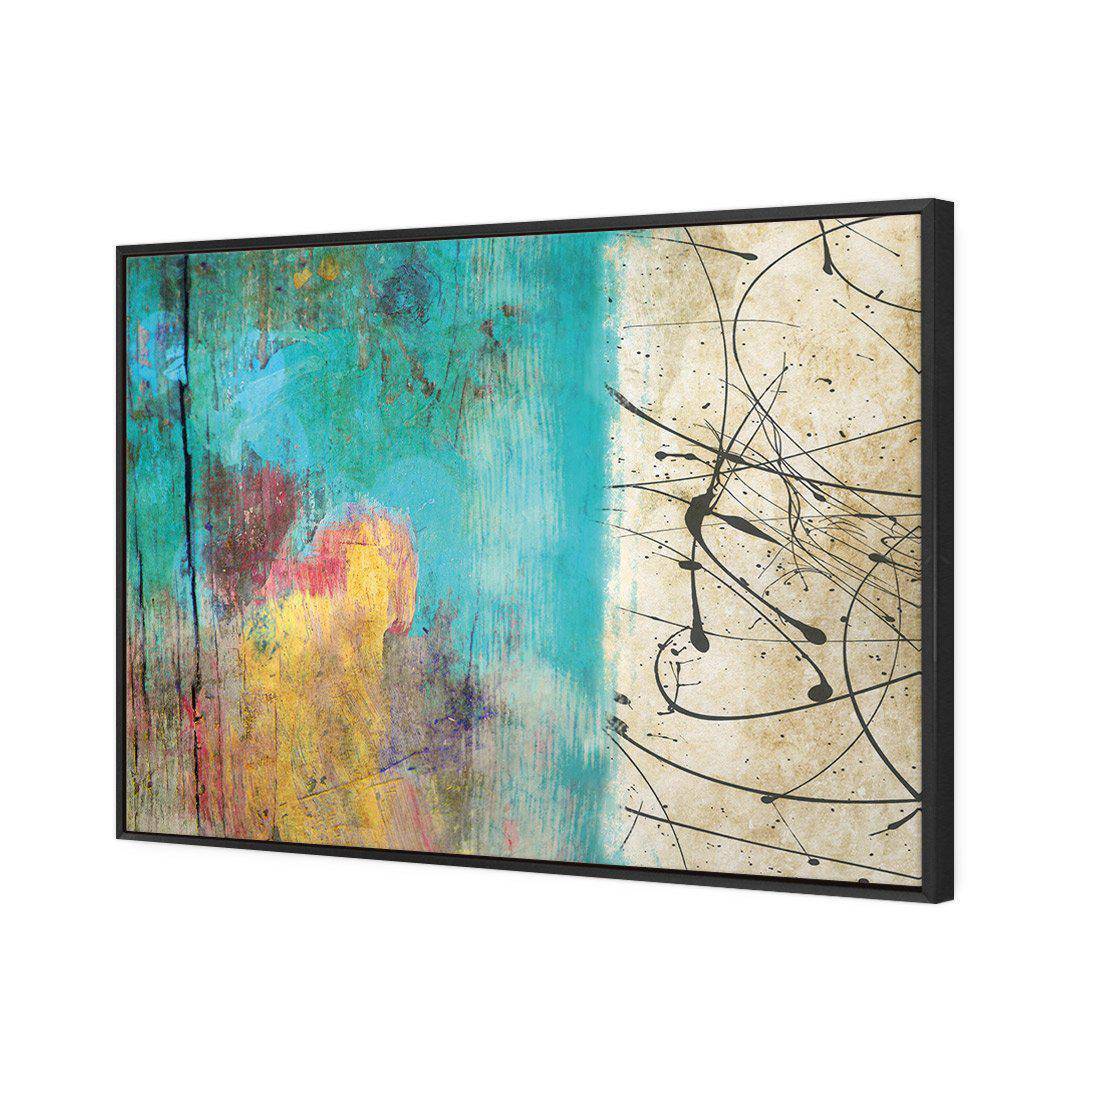 Painted Grunge Splatter Canvas Art-Canvas-Wall Art Designs-45x30cm-Canvas - Black Frame-Wall Art Designs